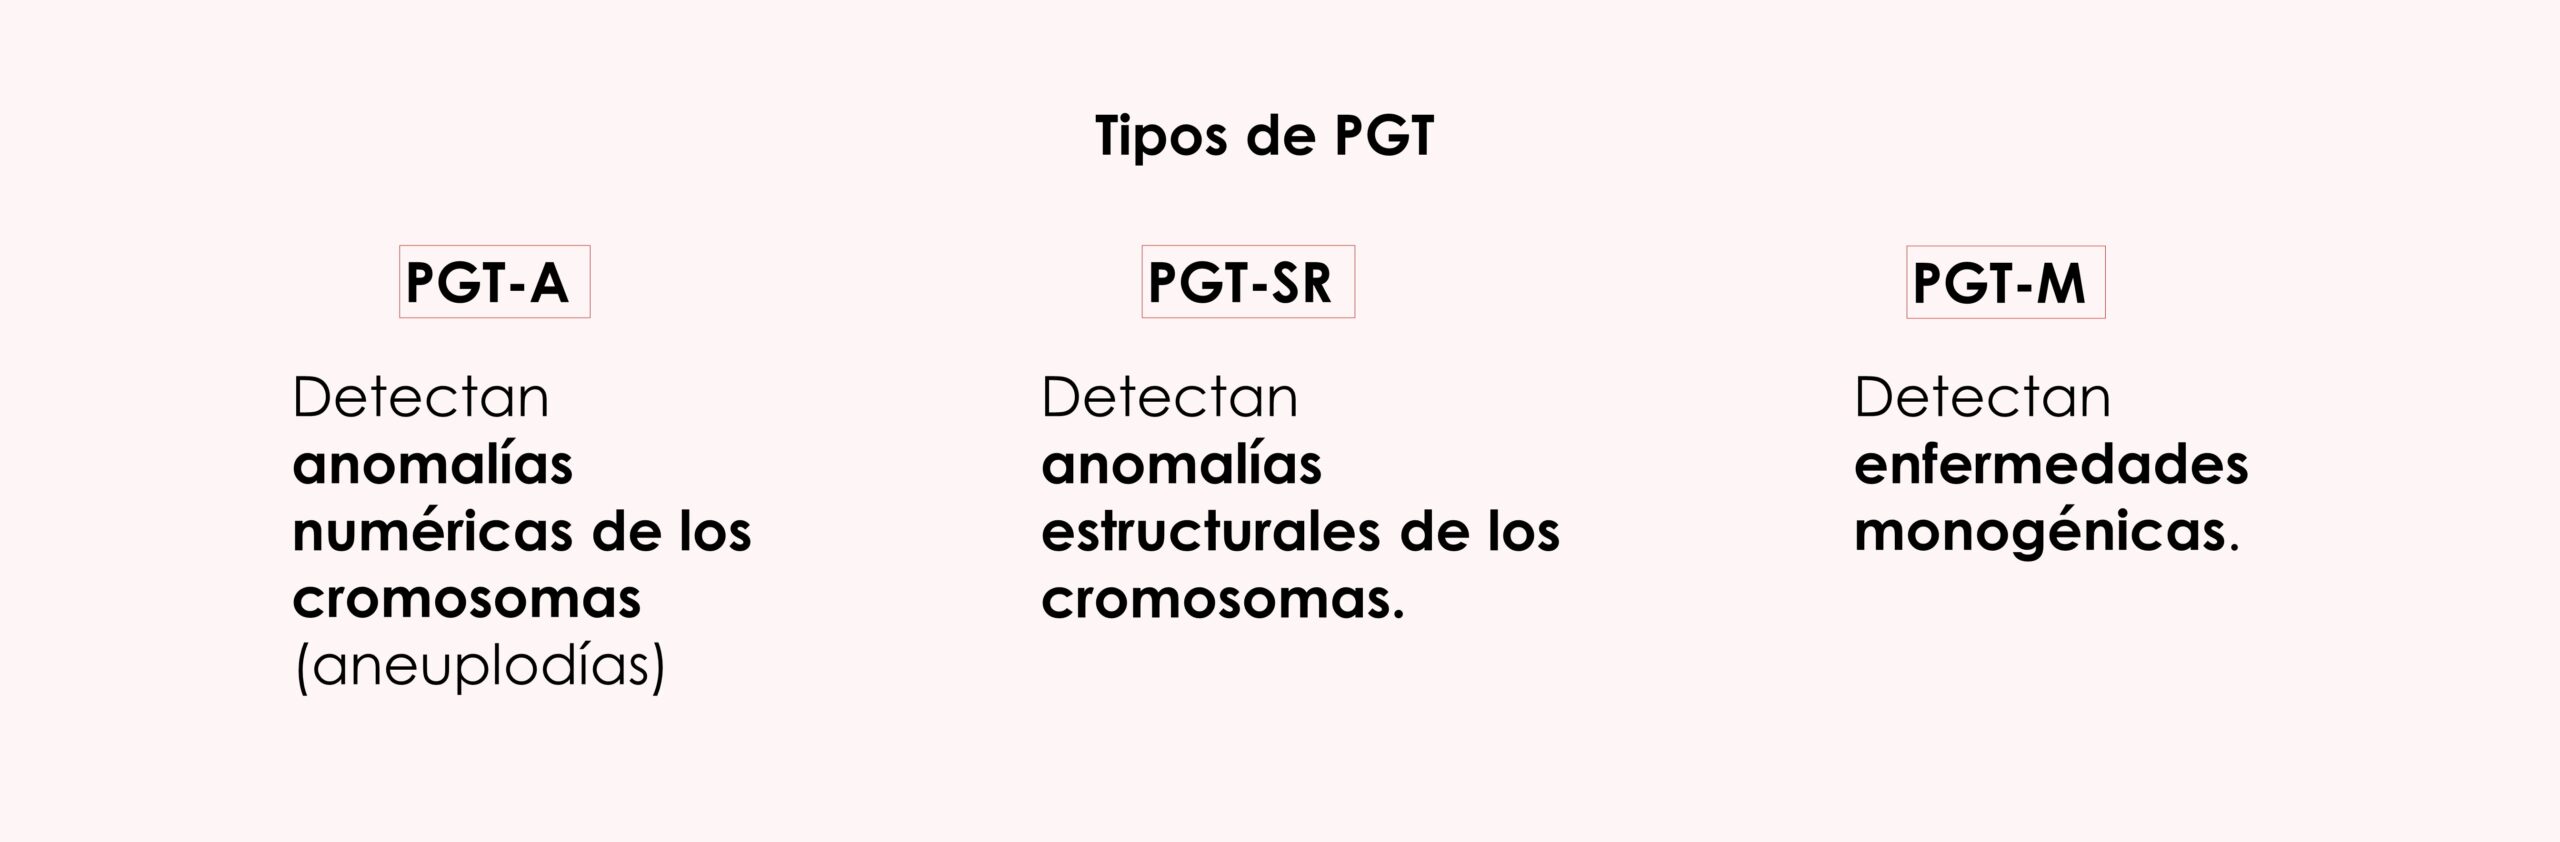 Tipos de PGT